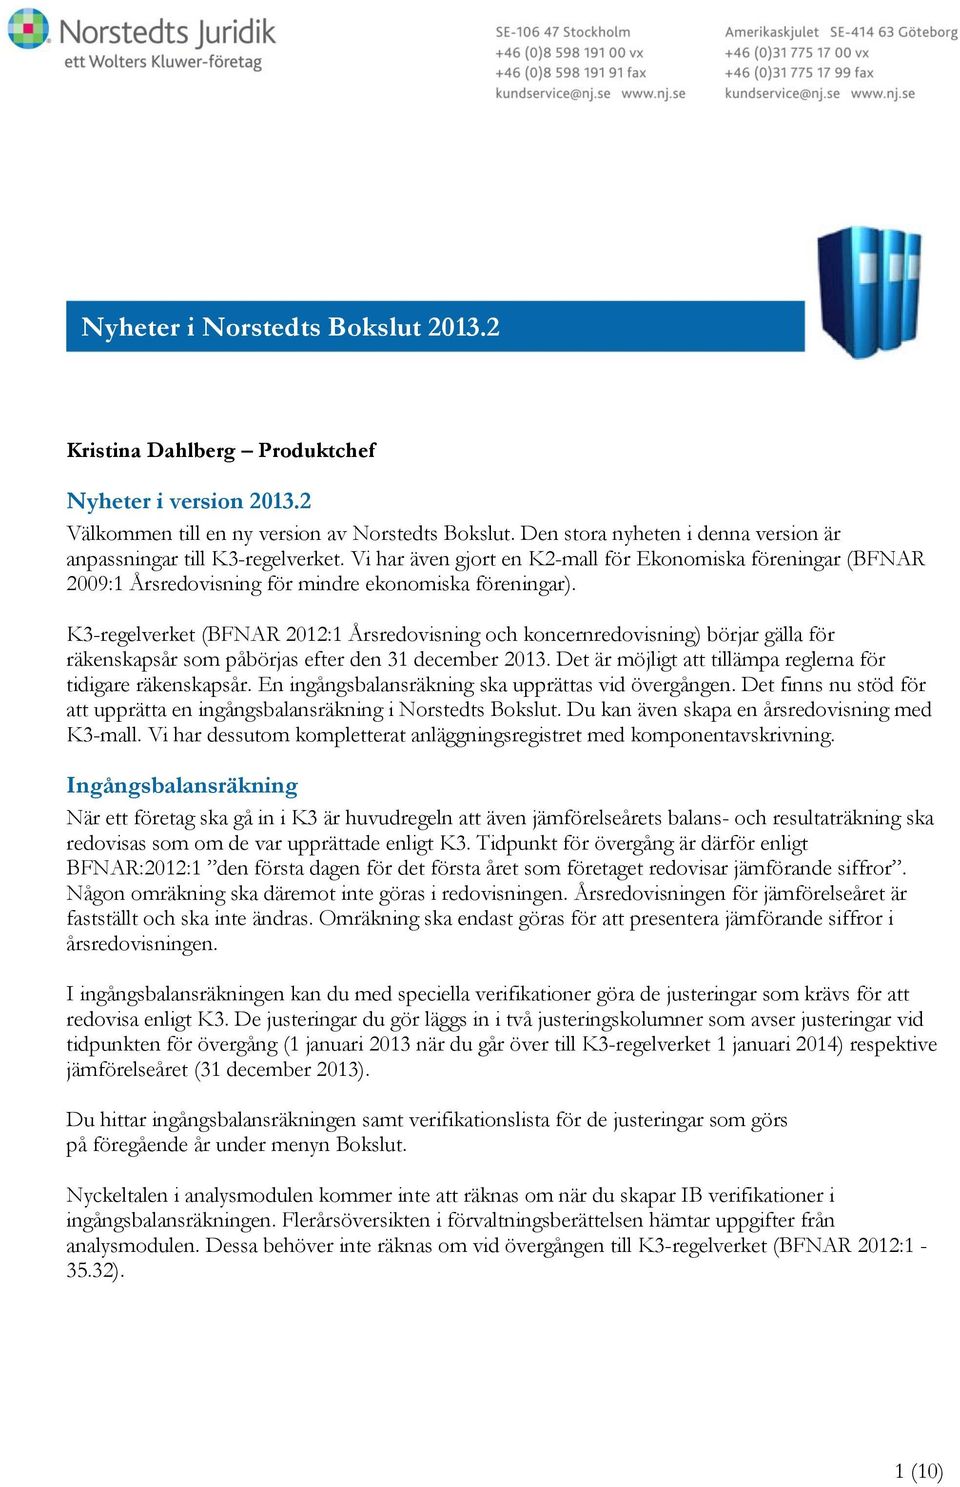 K3-regelverket (BFNAR 2012:1 Årsredovisning och koncernredovisning) börjar gälla för räkenskapsår som påbörjas efter den 31 december 2013.